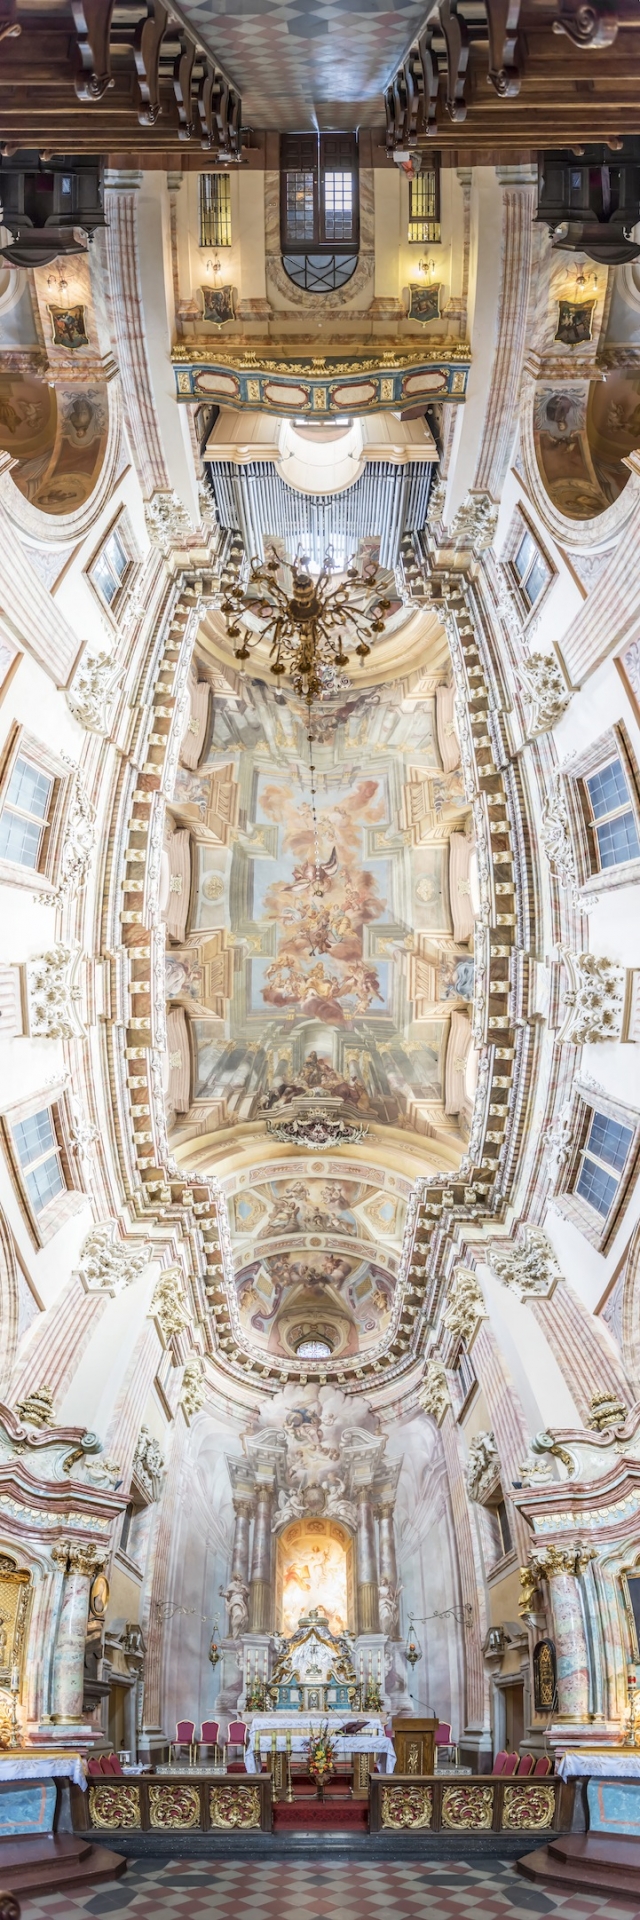 Головокружительные вертикальные панорамы церквей от Ричарда Сильвера (Richard Silver)